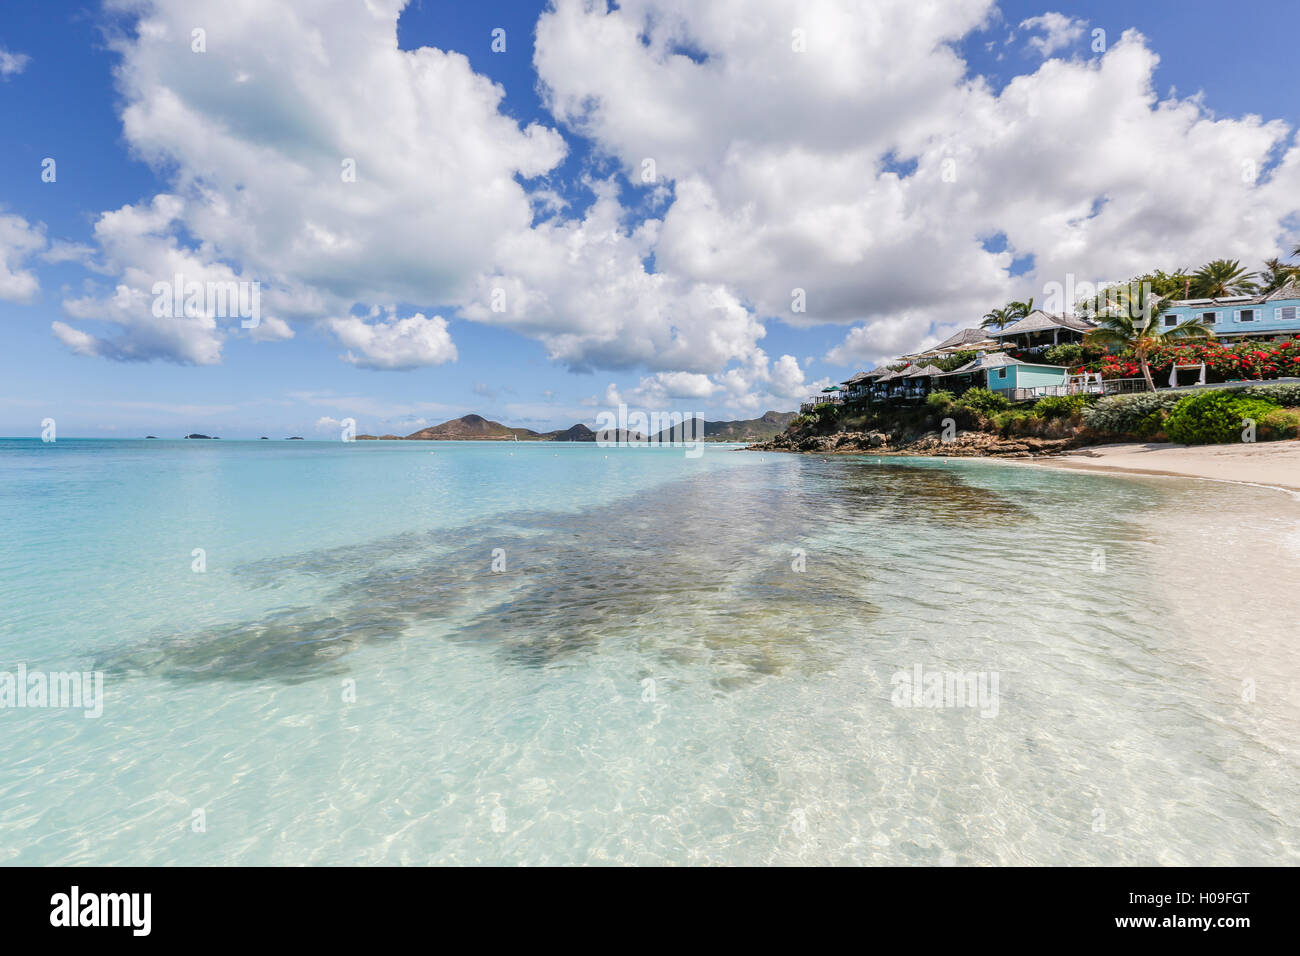 Un complexe en bord de mer entouré de fleurs et de plantes, Ffryes Beach, Antigua, Antigua et Barbuda, Iles sous le vent, West Indies Banque D'Images